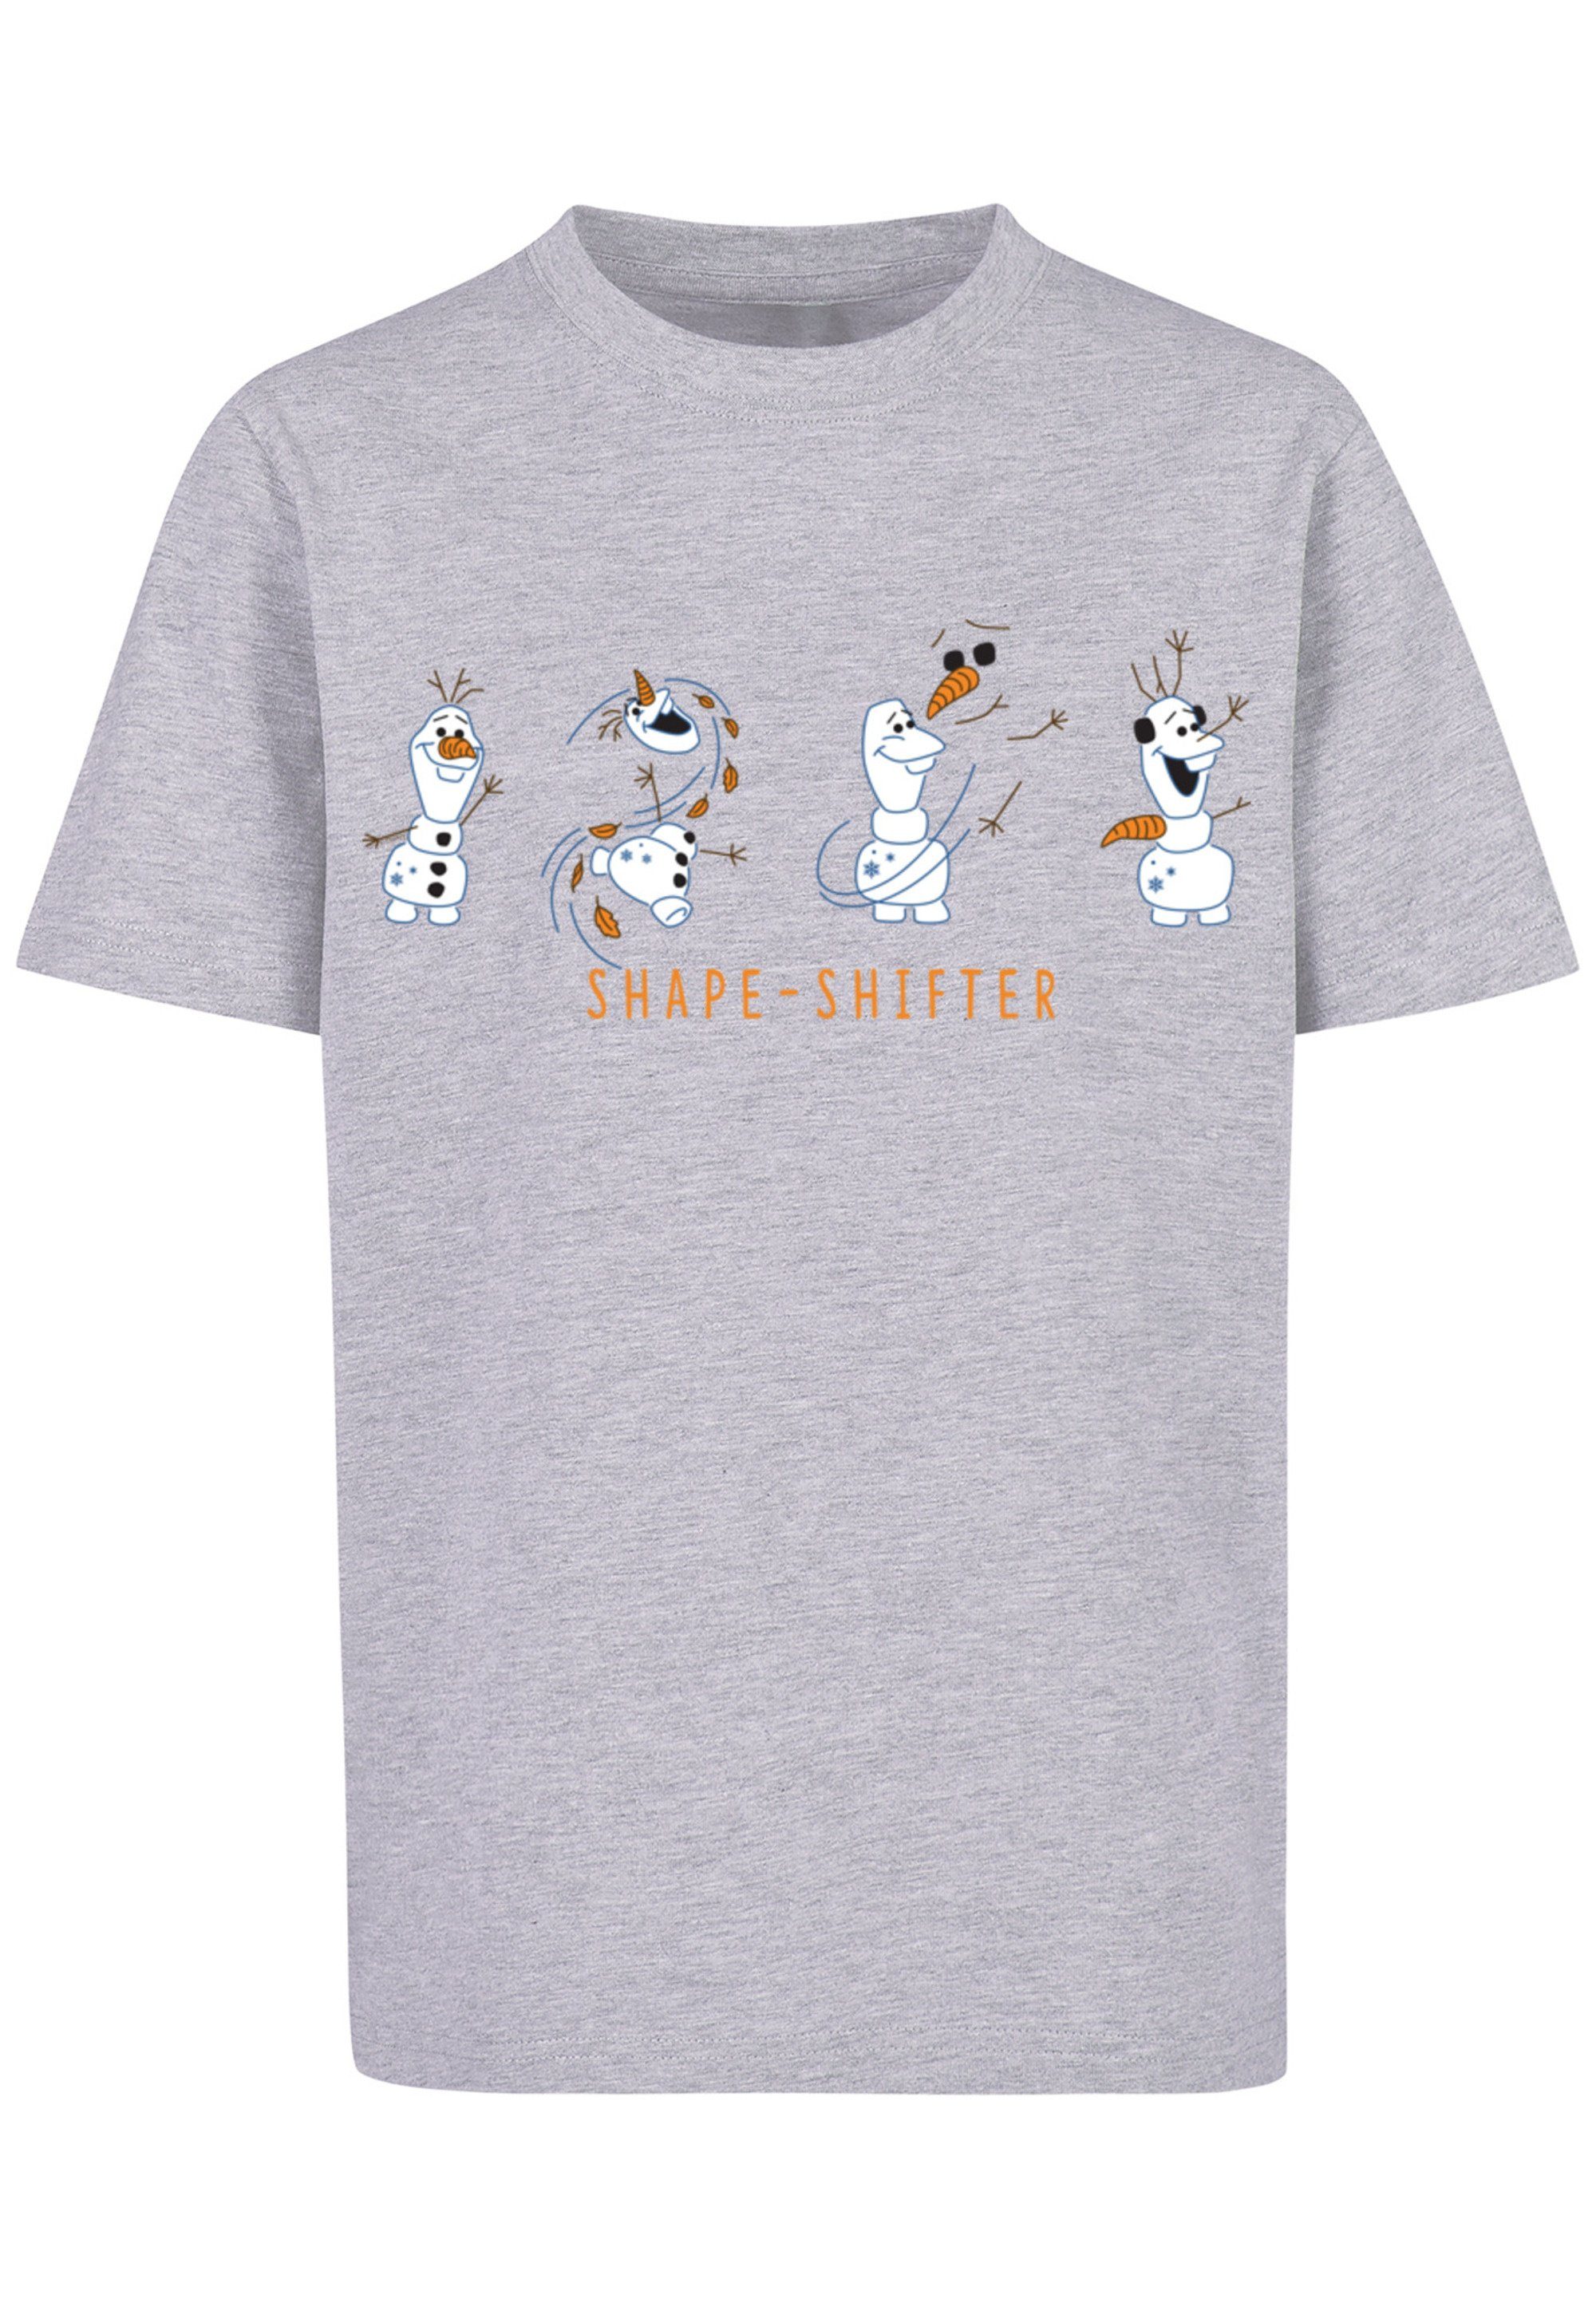 F4NT4STIC T-Shirt Disney Frozen 2 Olaf Shape-Shifter Print, Bequemer  Schnitt zum rundum wohlfühlen